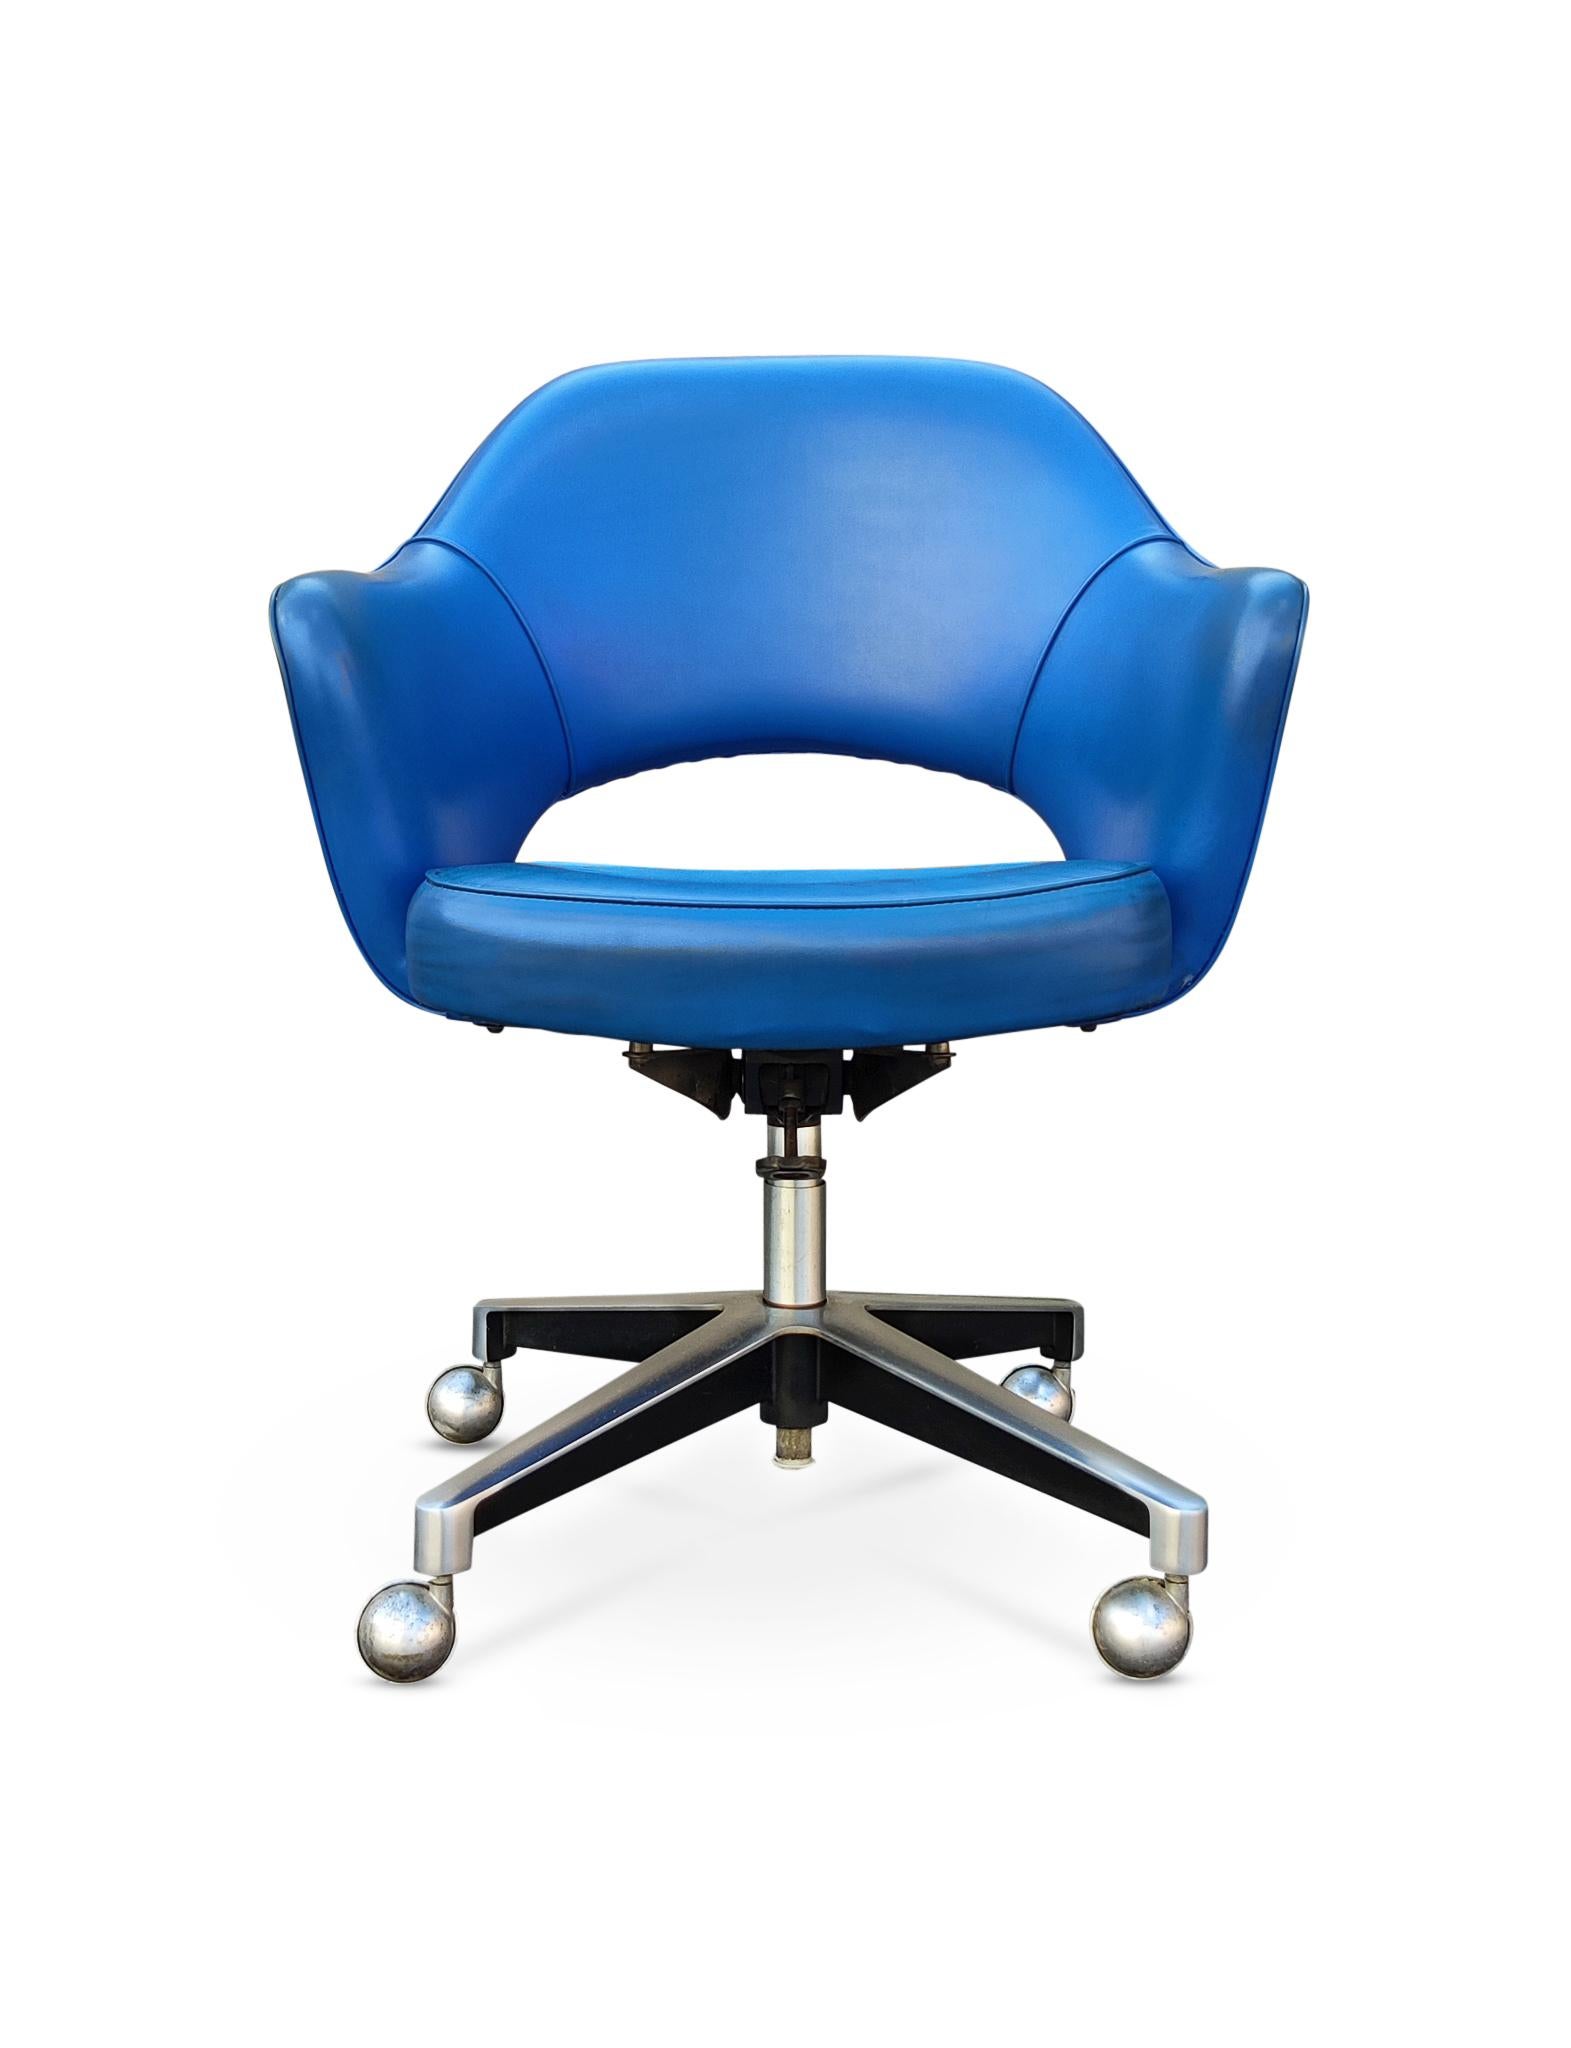 Veuillez noter que j'ai une paire de fauteuils assortis, voir la dernière photo. 

Fauteuil de direction conçu en 1950 par Eero Saarinen pour Knoll Associates. Cet exemple date du début des années 50, avec le mécanisme d'inclinaison le plus ancien.